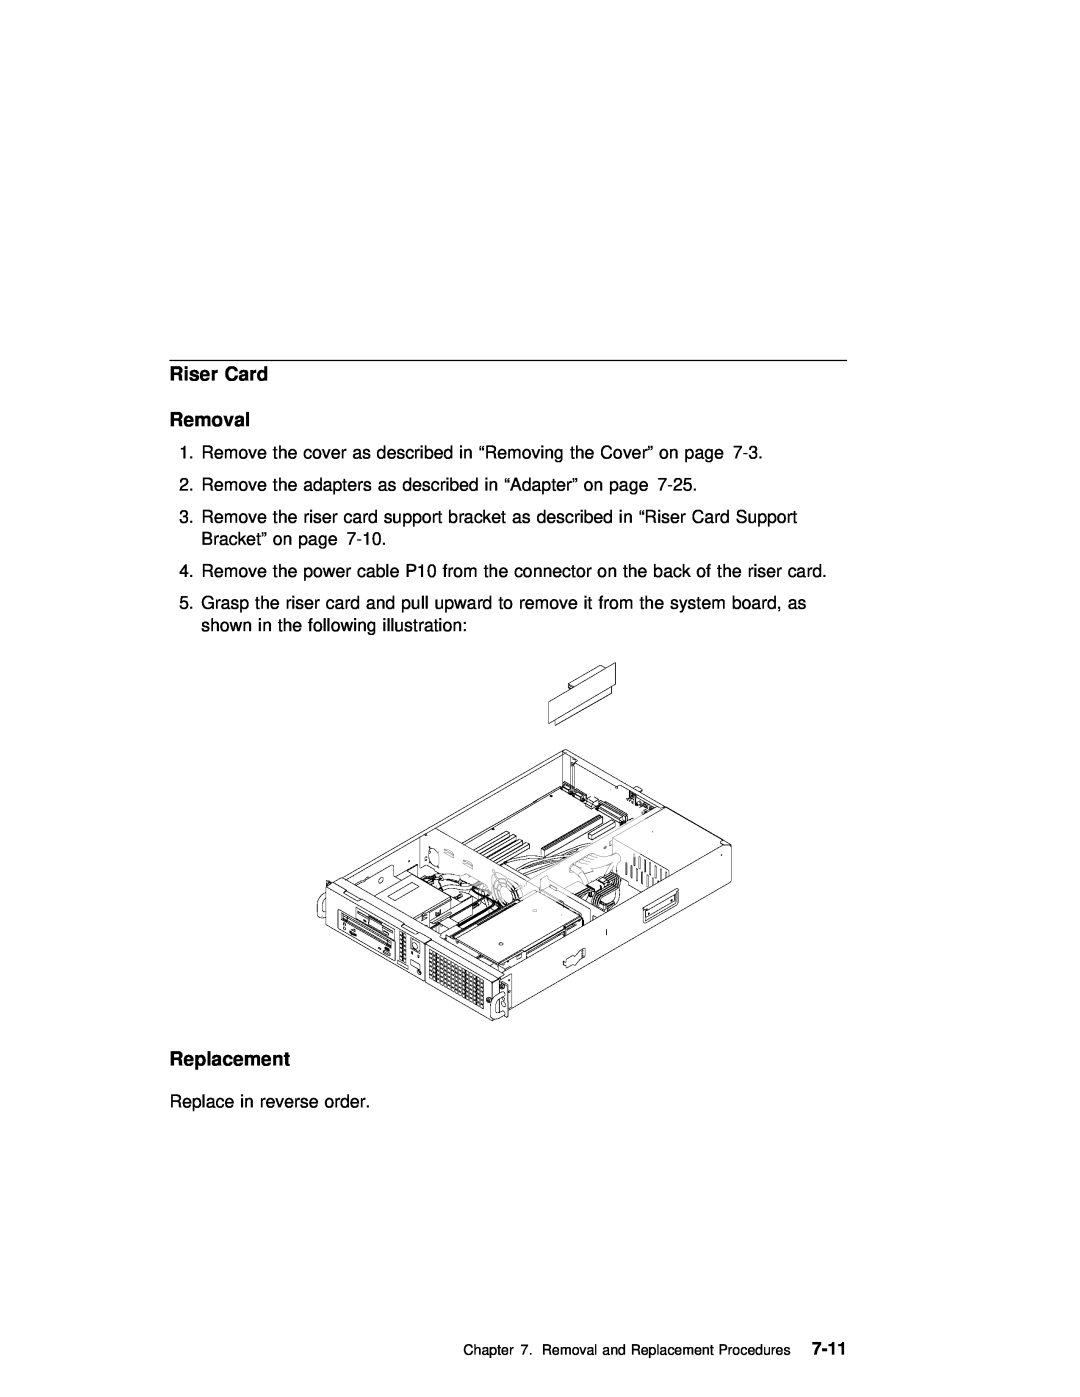 IBM B50 manual Riser Card Removal, 7-11, Replacement 